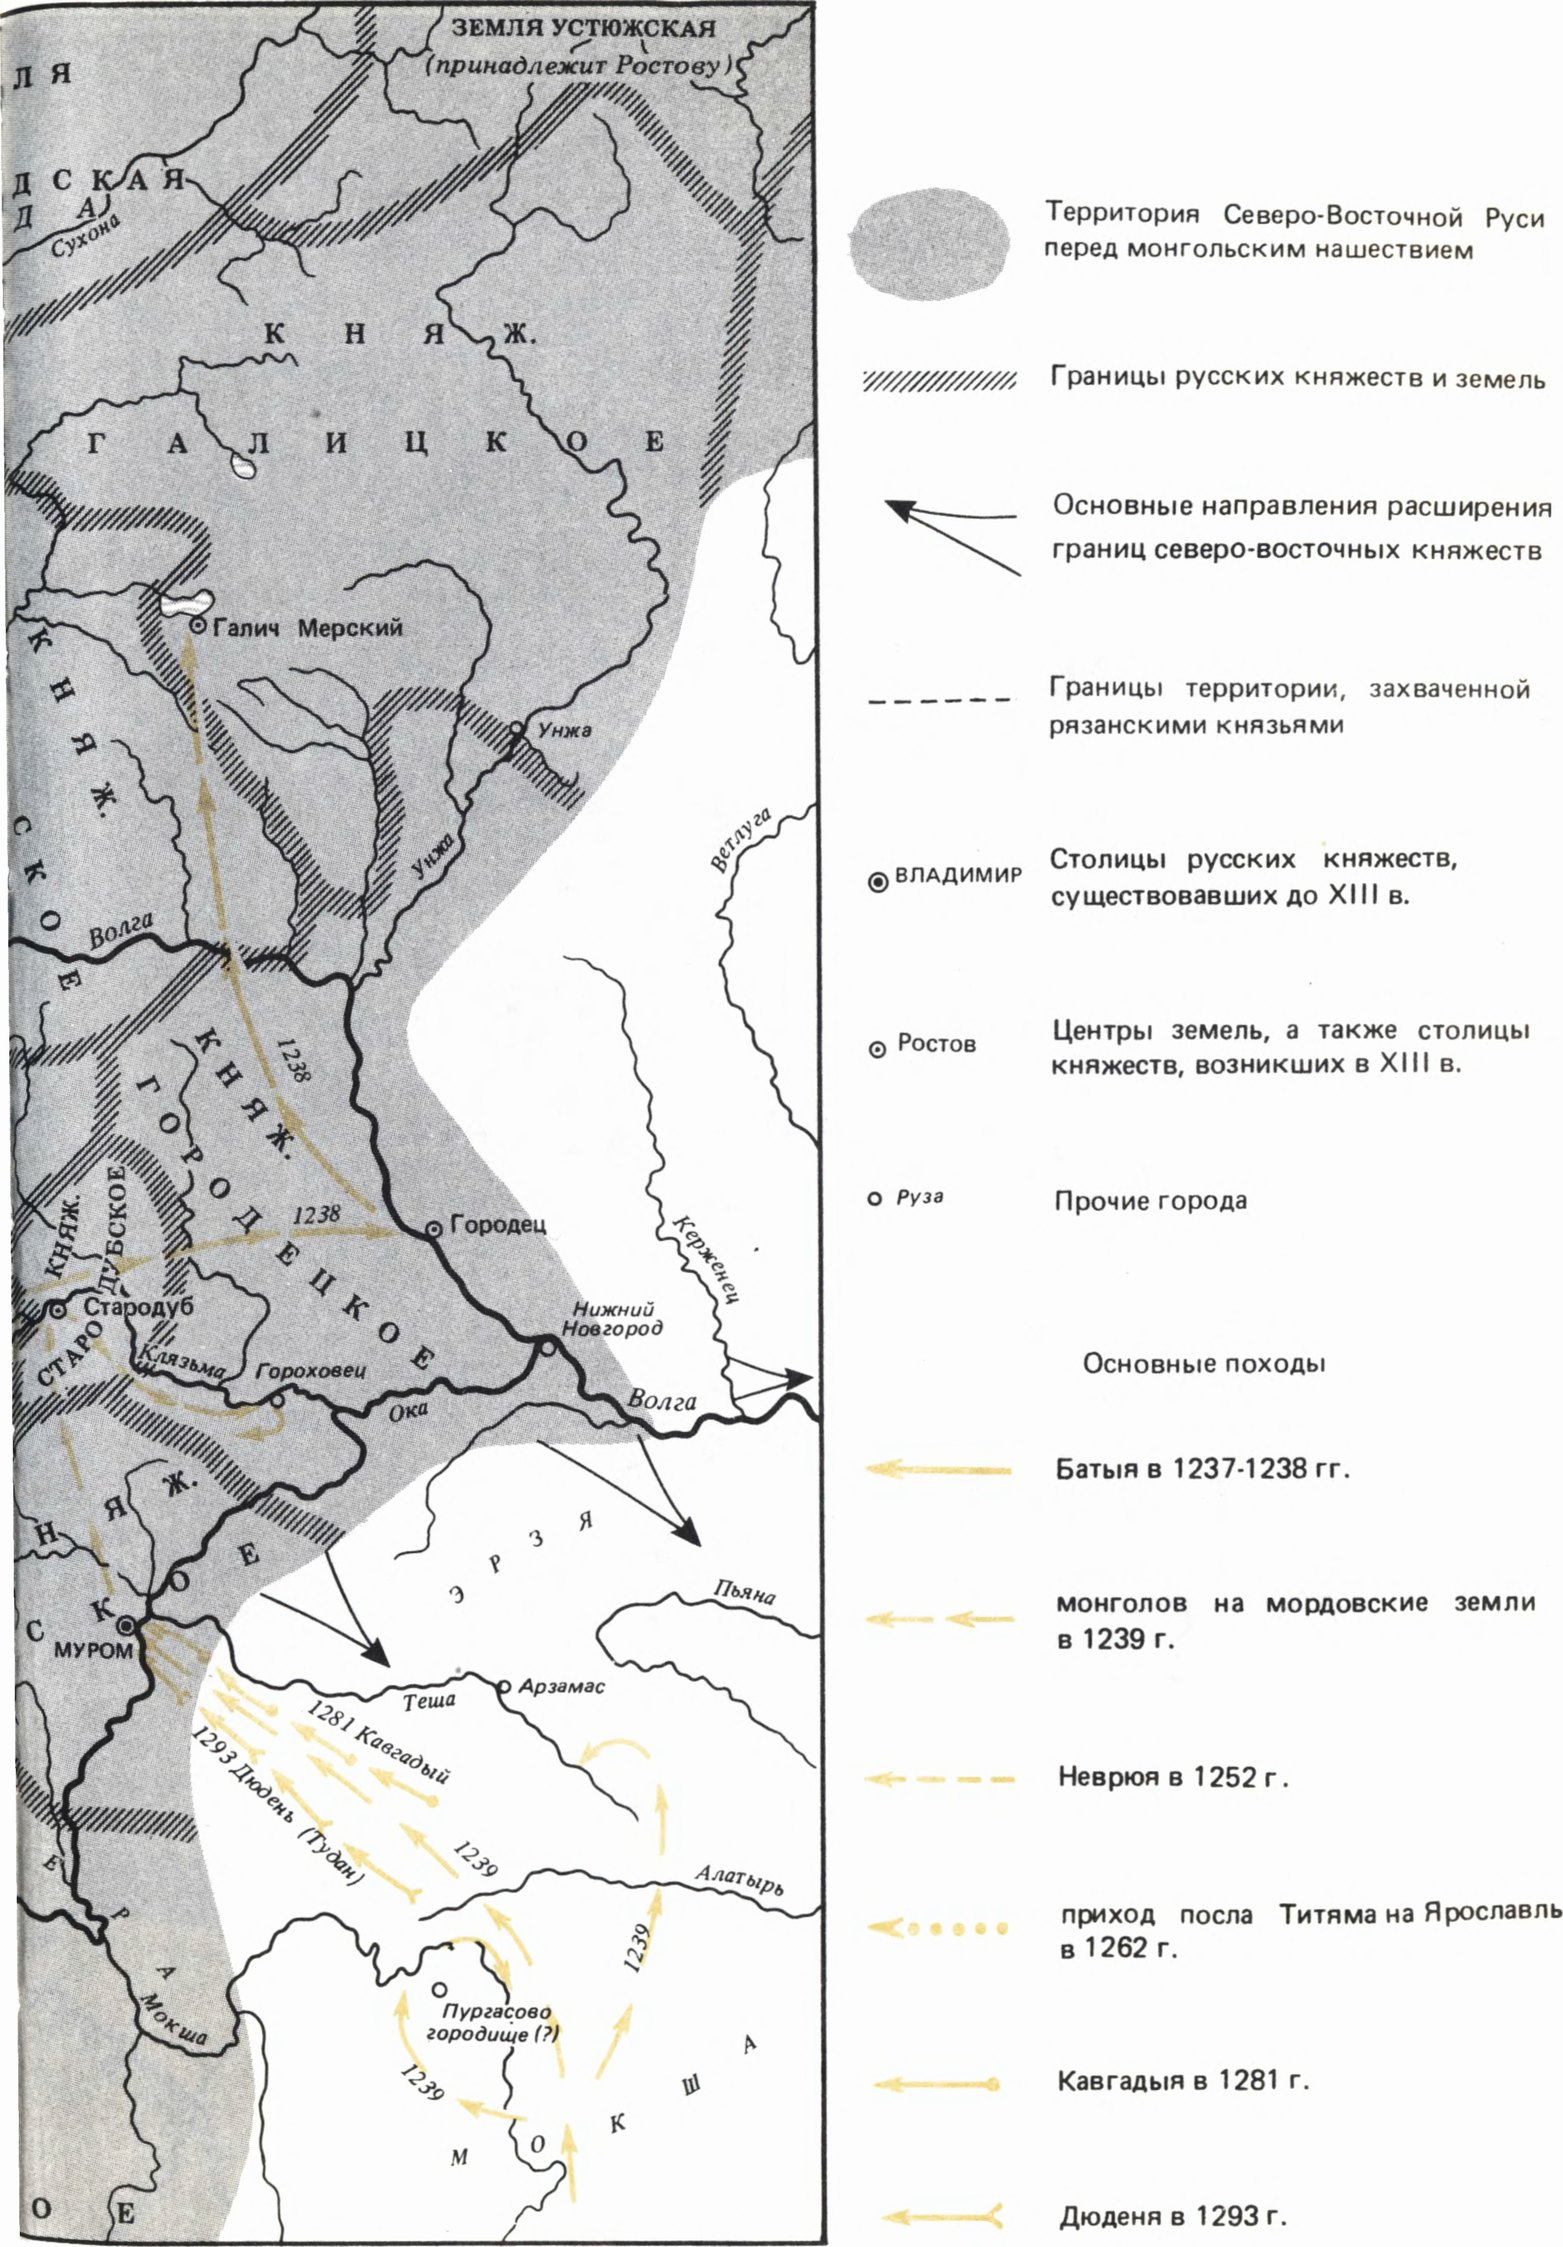 Северо-восточная Русь с 1200 г. до 1305 г. и монгольское завоевание (составлена на основании карты И.А. Голубцова)